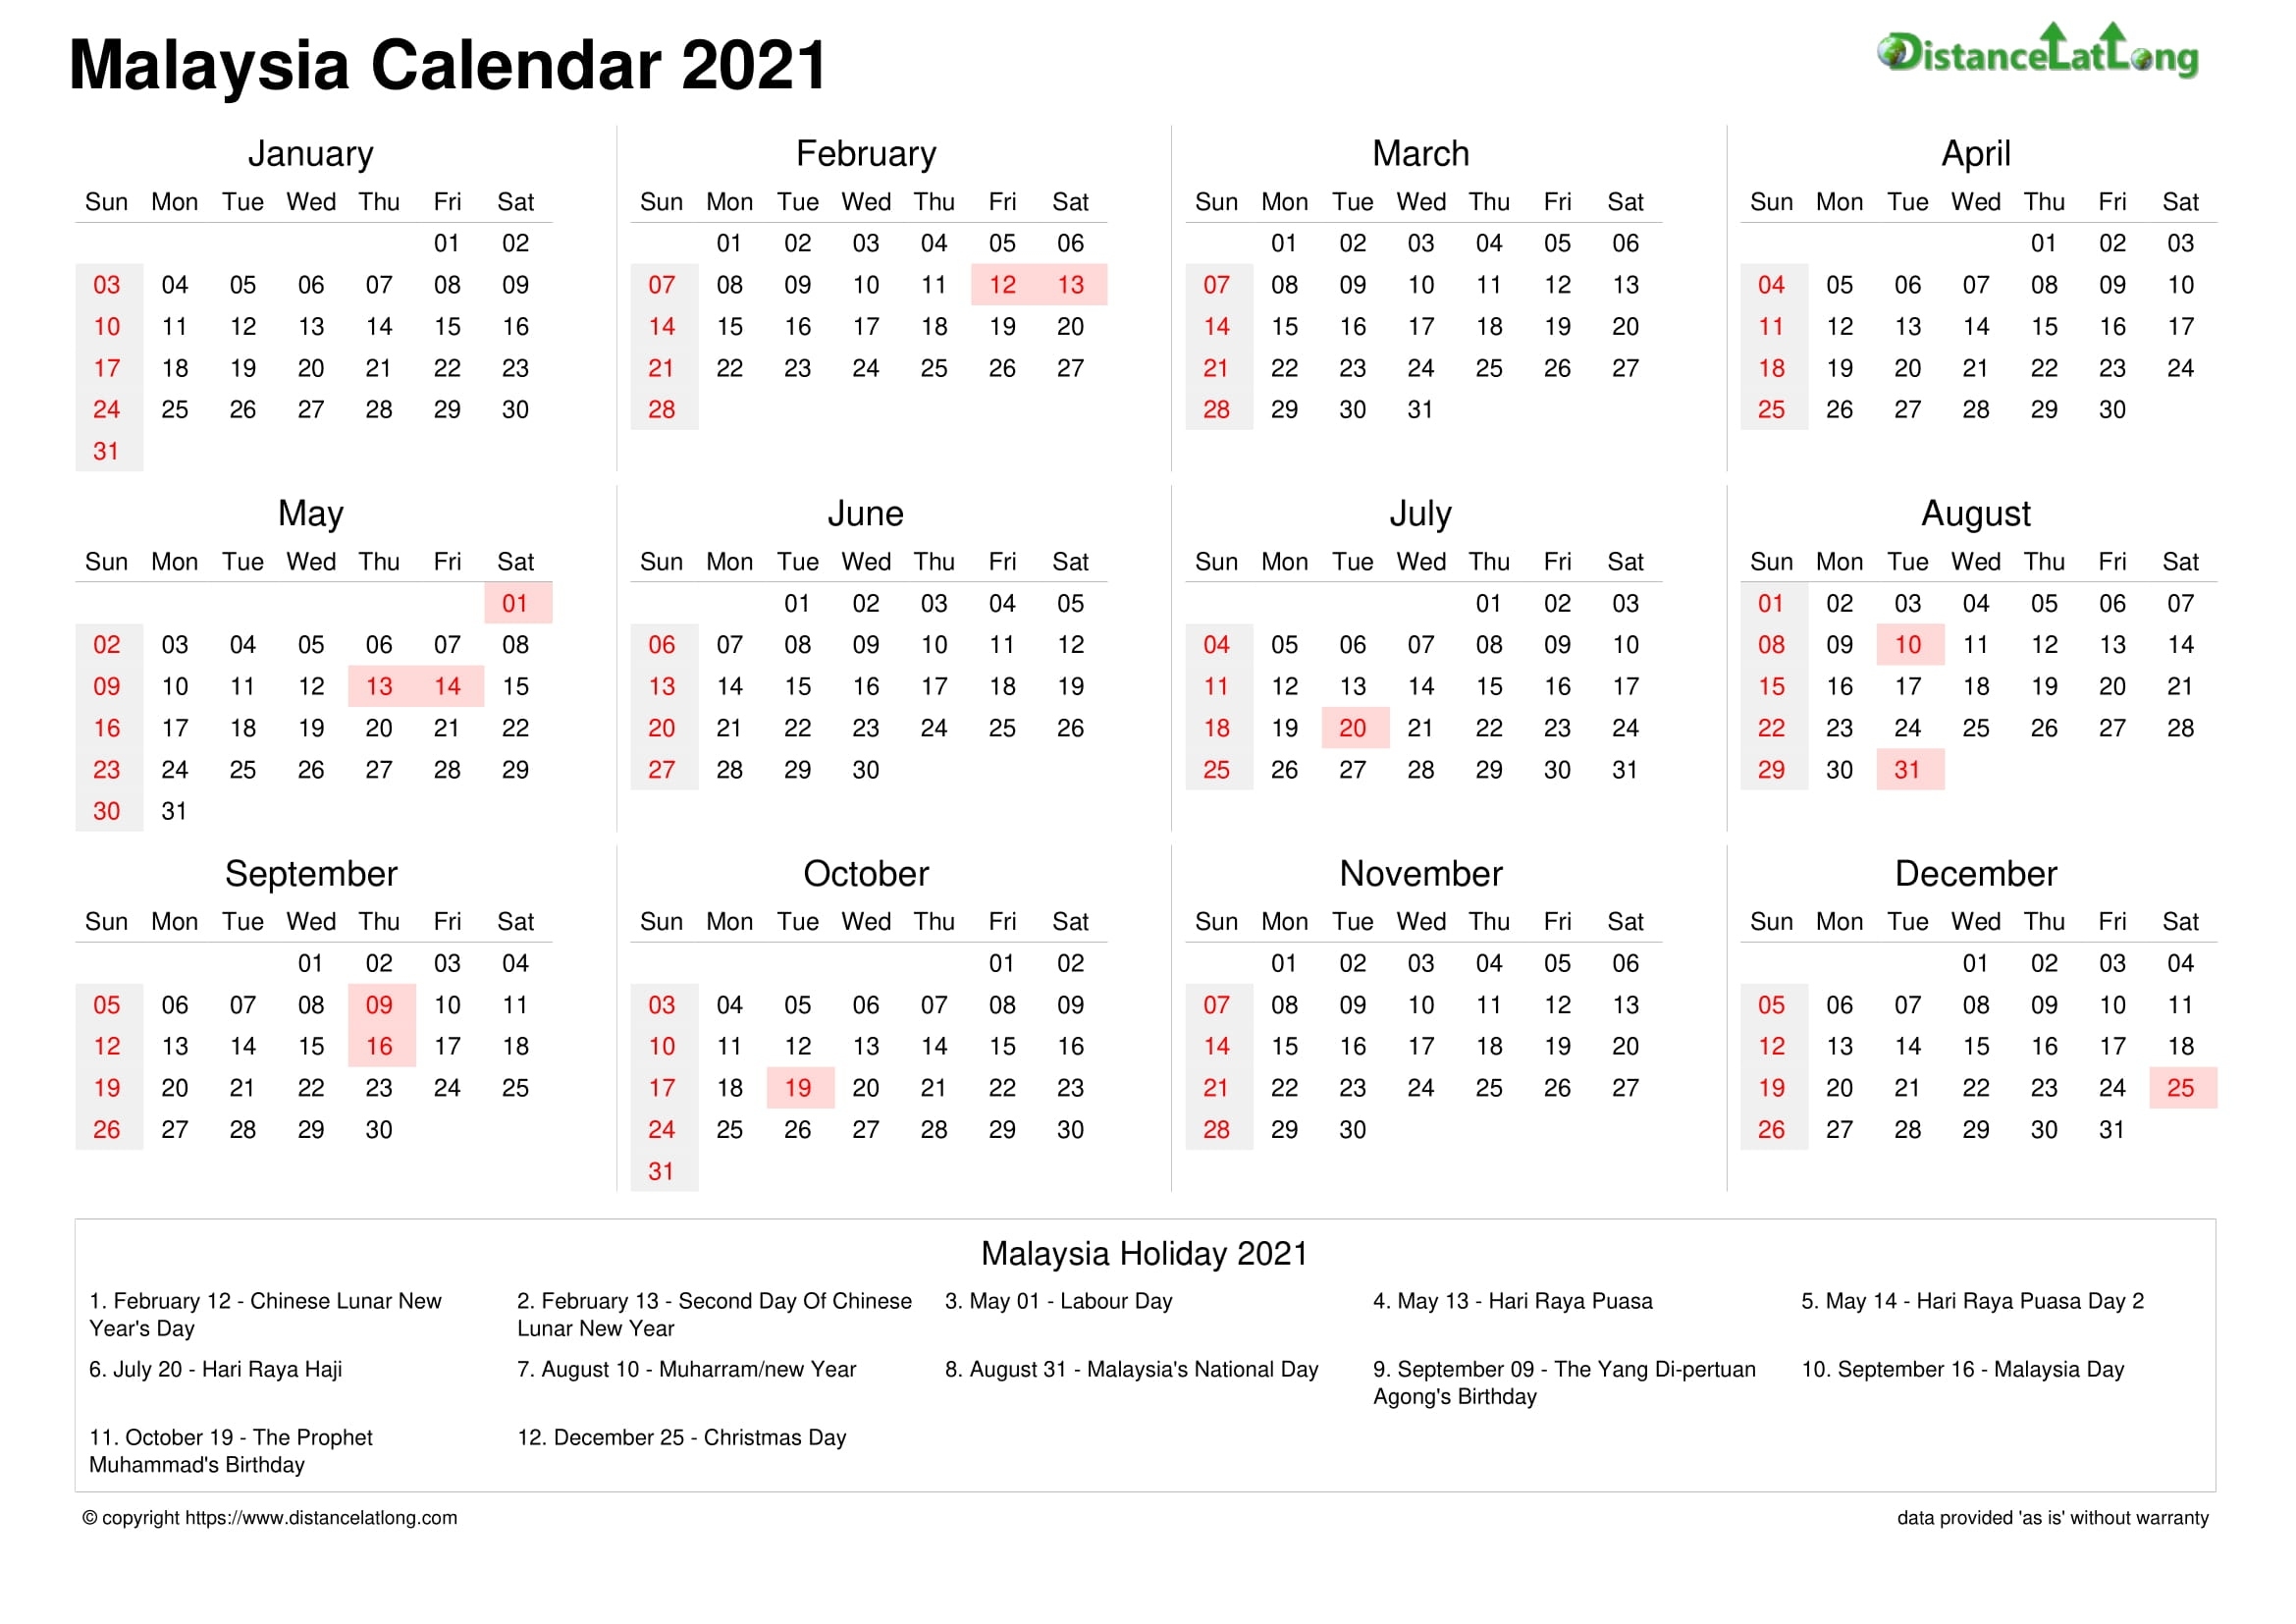 See Also: September 2021 Calendar Malaysia